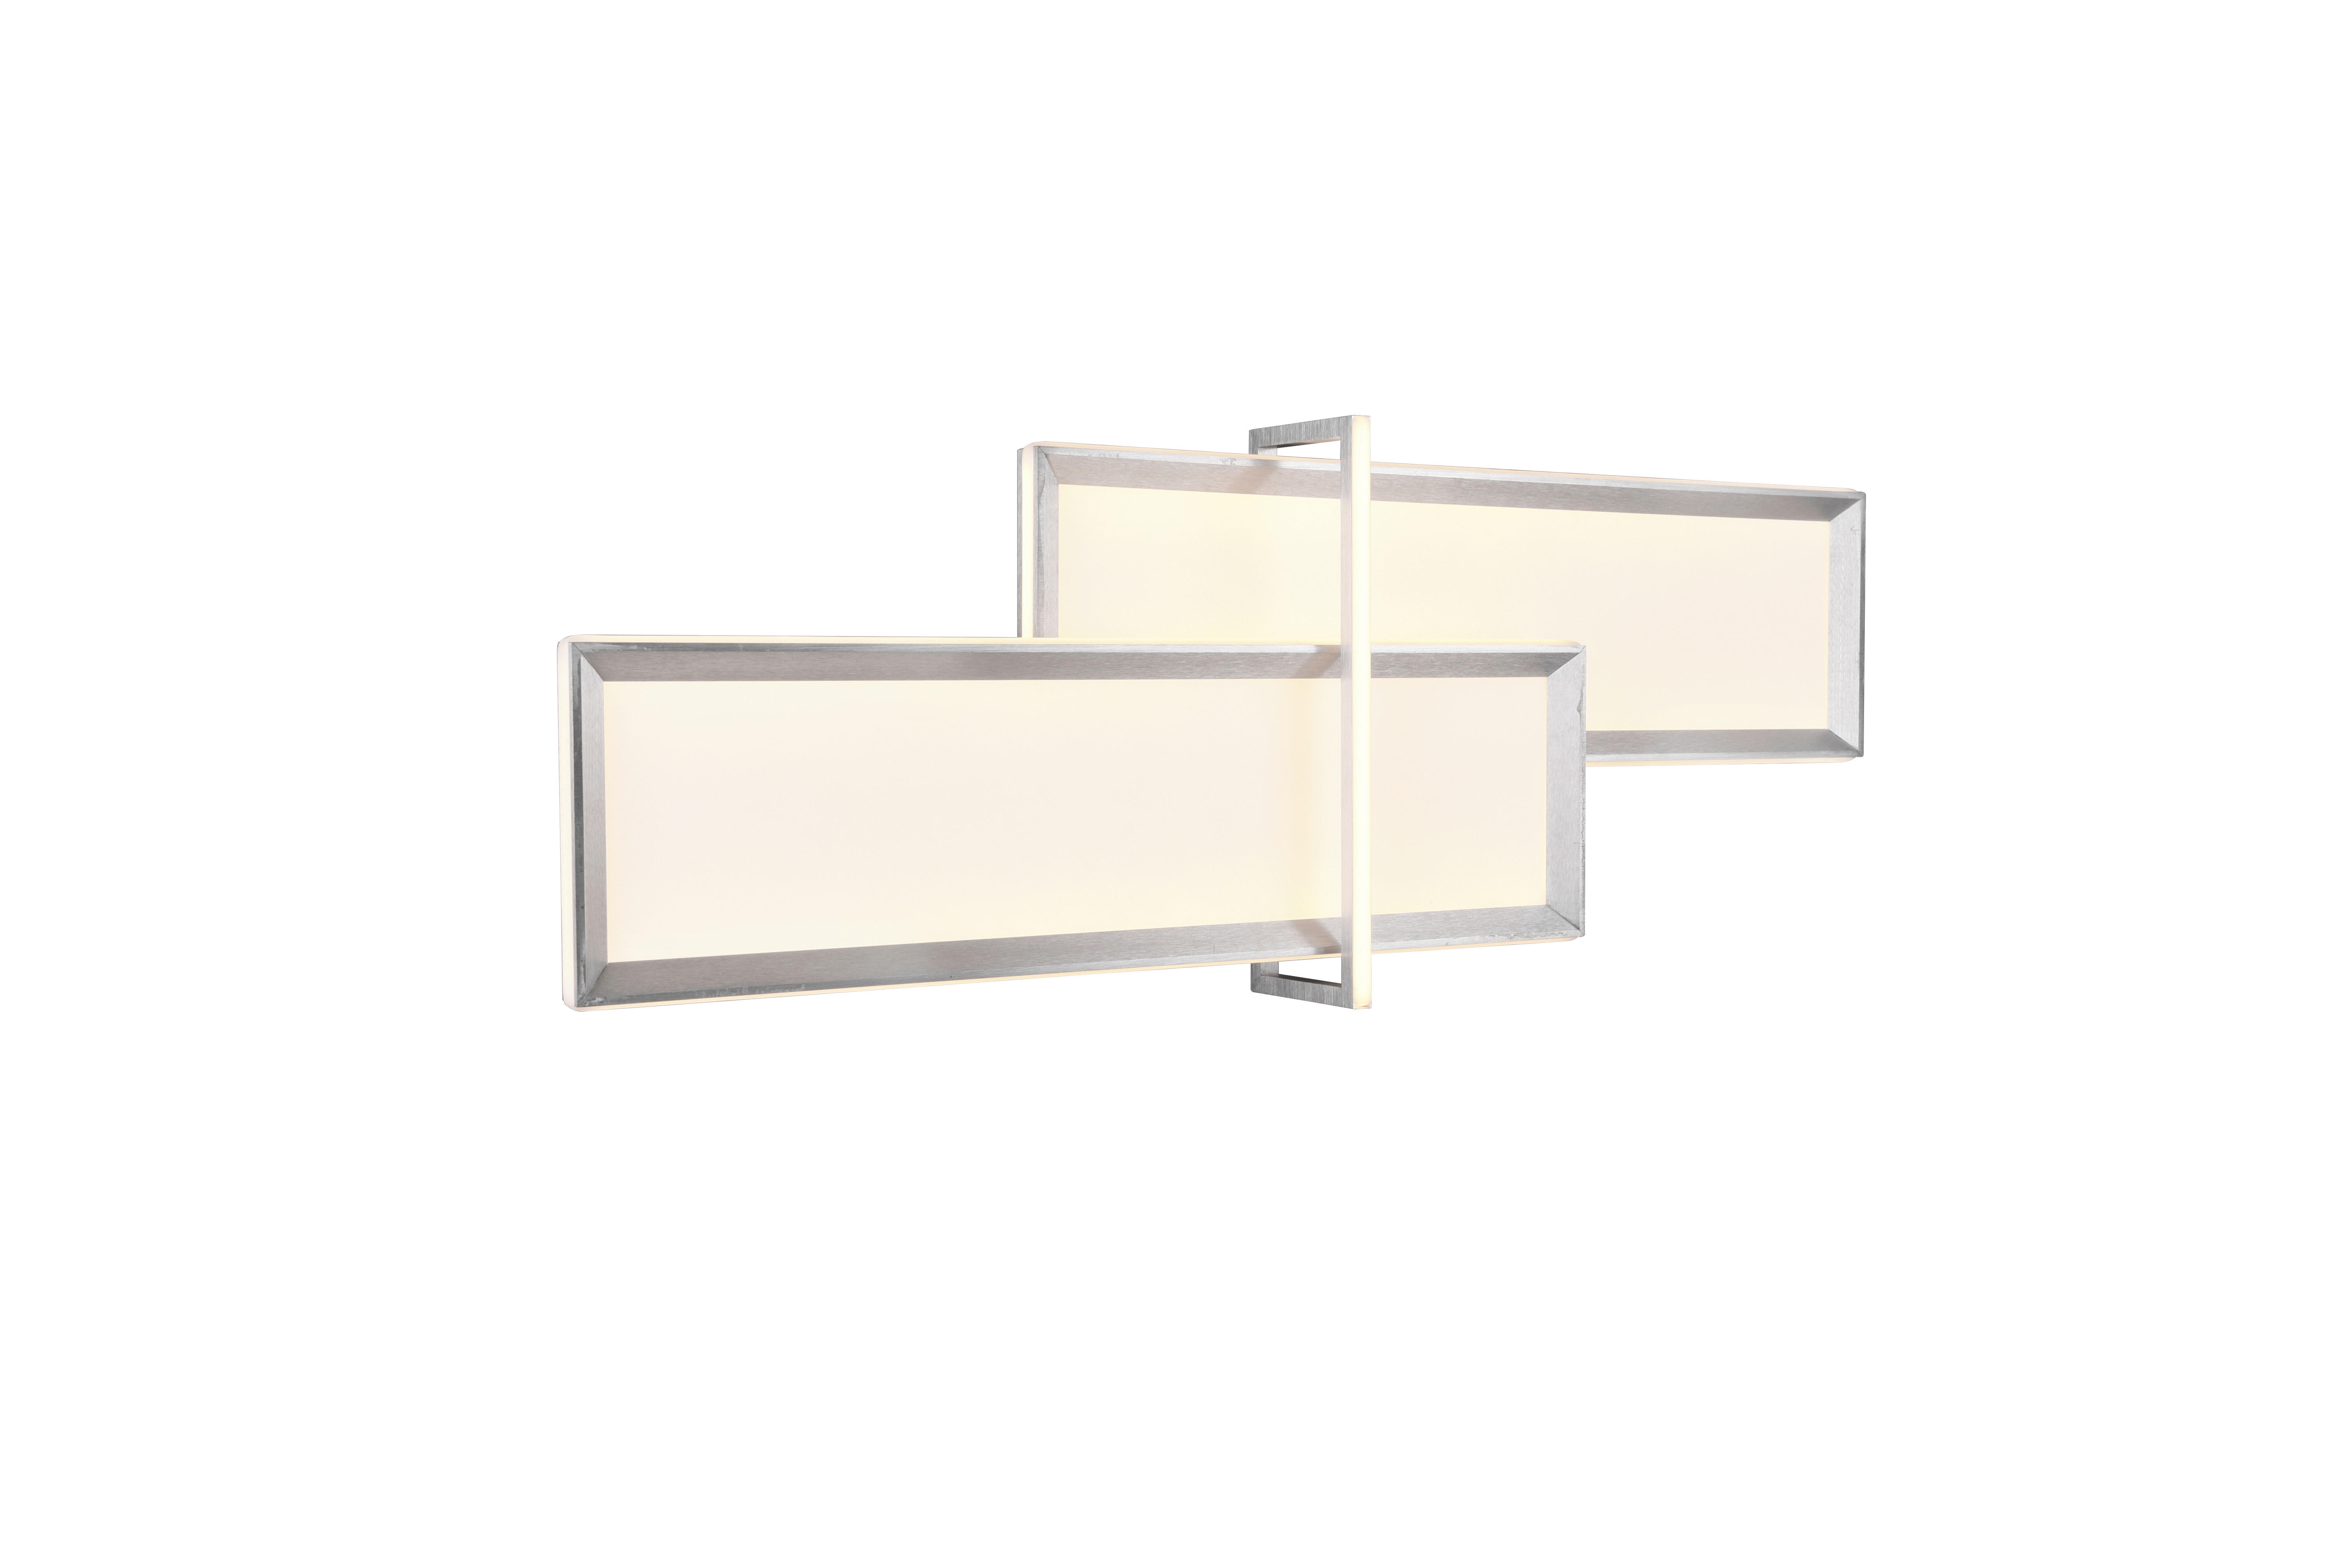 LED-DECKENLEUCHTE Charleston 101/12,5/38 cm   - Weiß/Grau, Design, Kunststoff/Metall (101/12,5/38cm) - Trio Leuchten